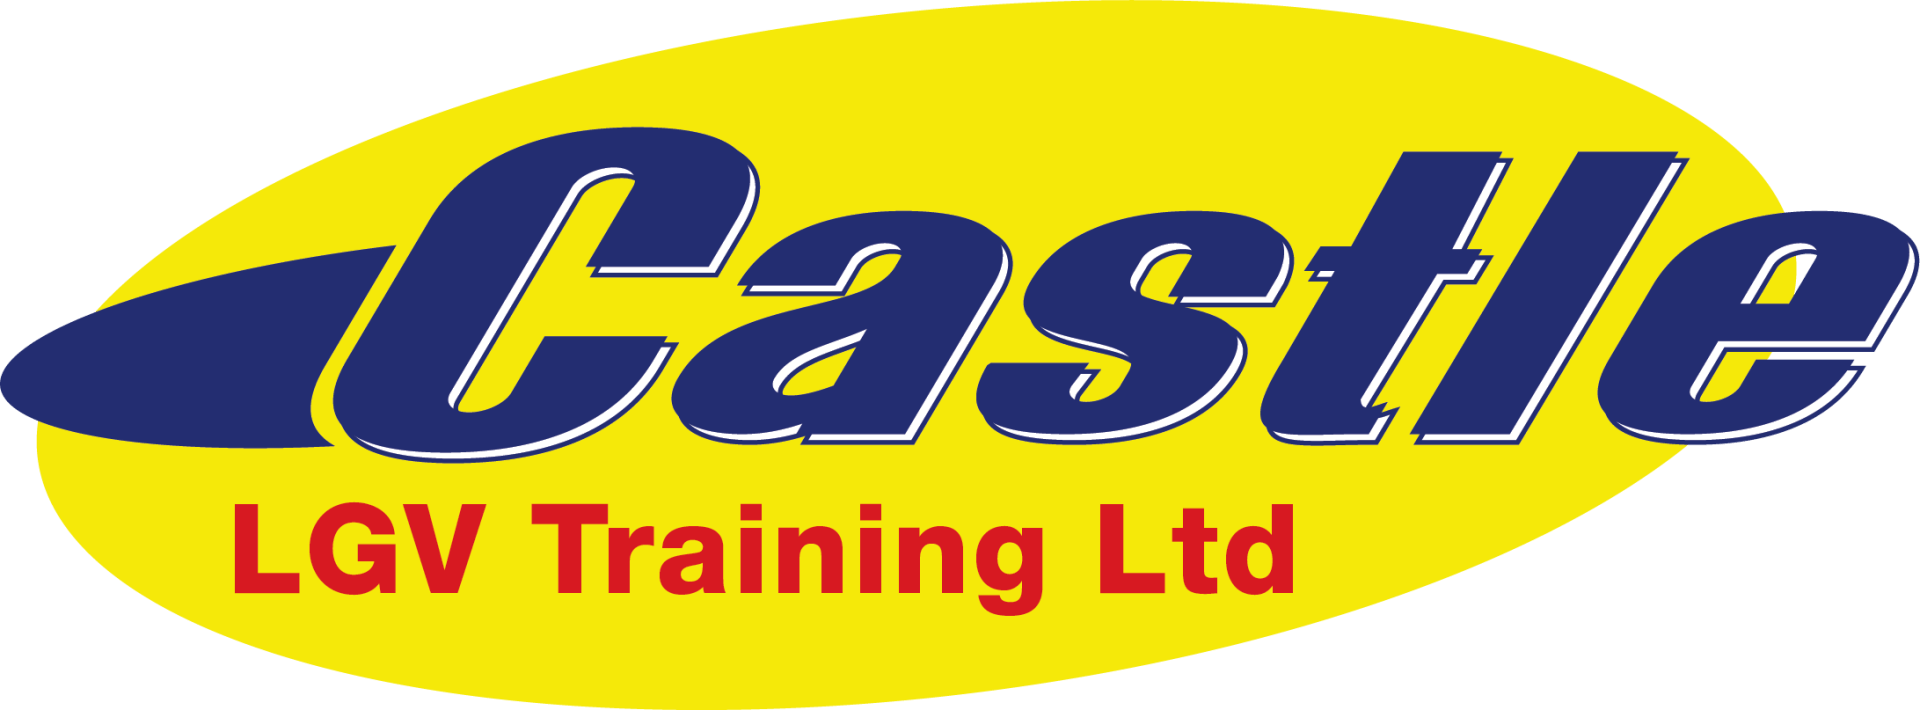 Castle LGV Training Ltd Logo